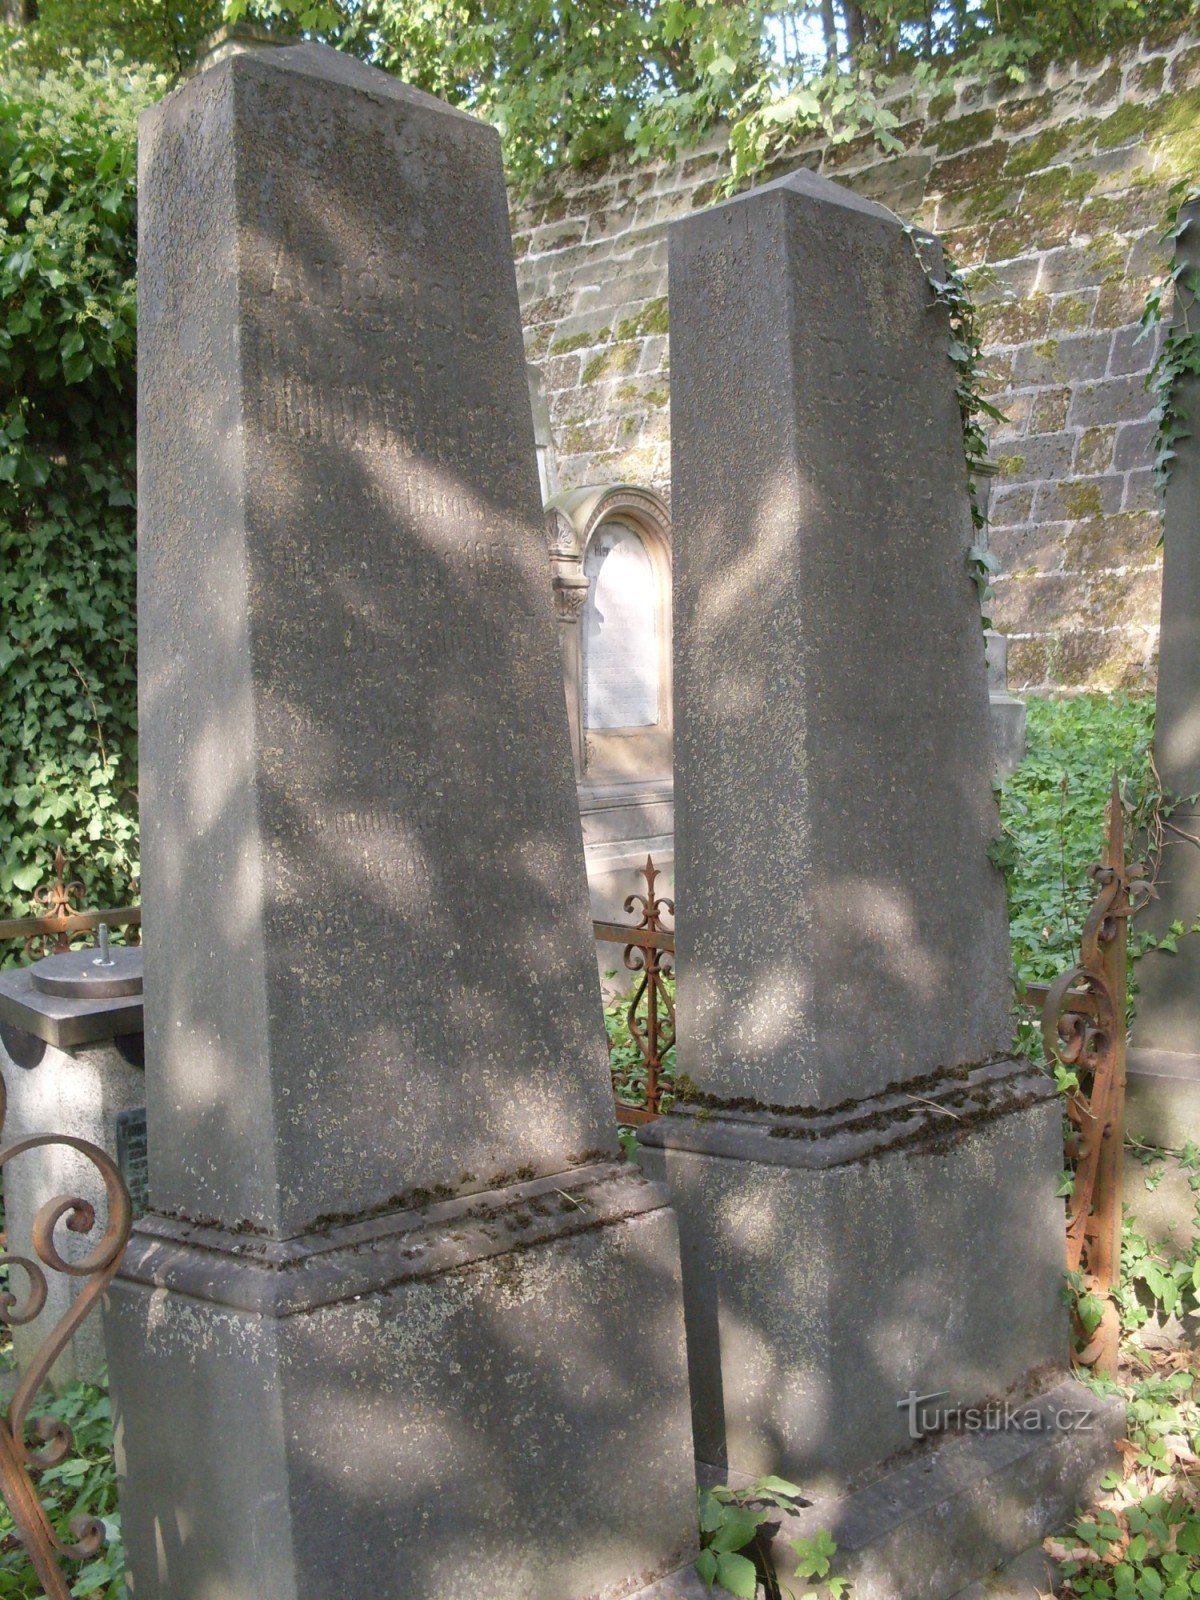 Nagrobniki judovskega pokopališča v Trutnovu